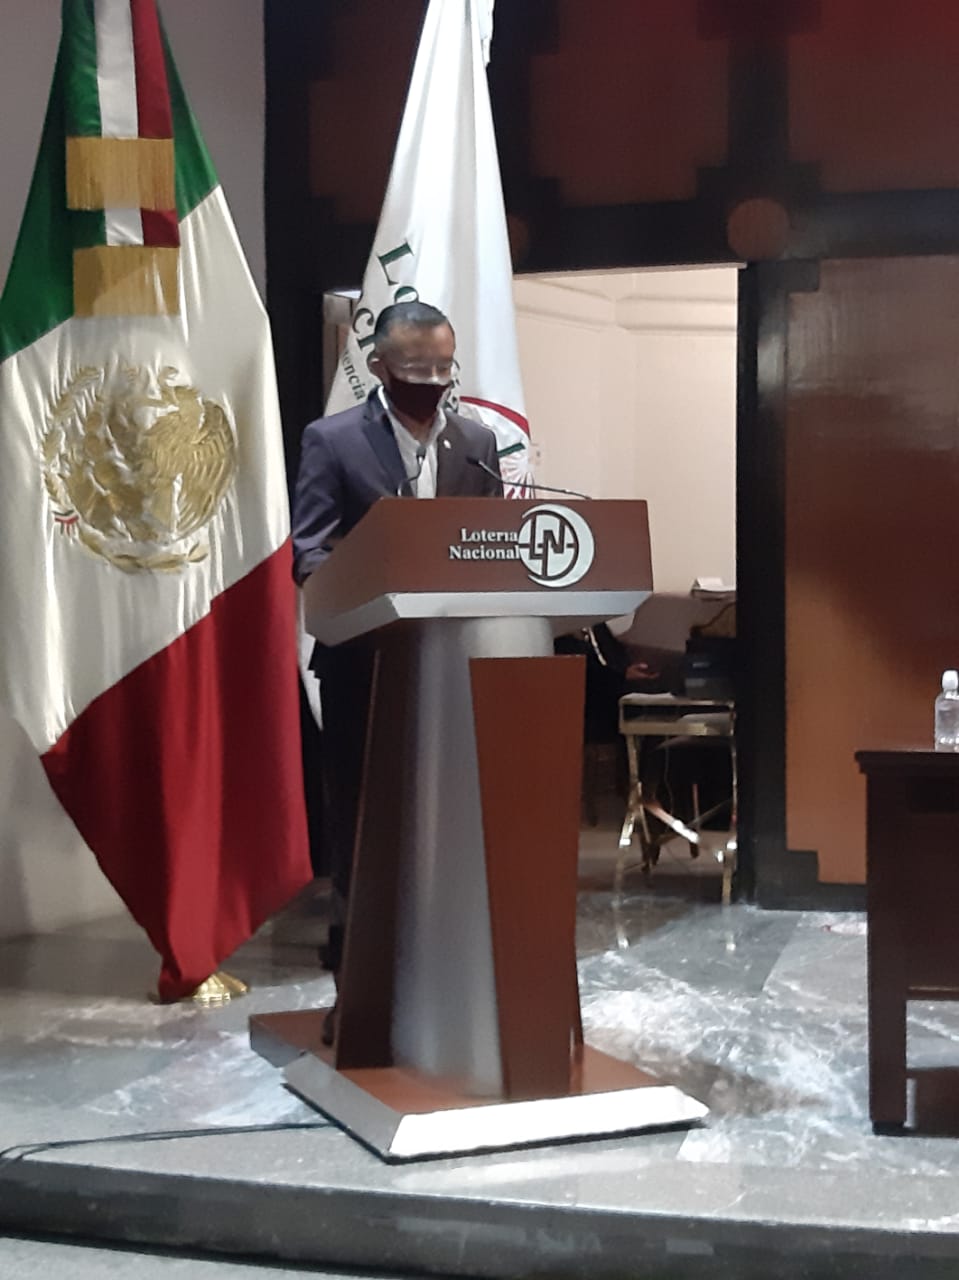 Fotografía donde aparece Carlos Quiroz Téllez durante su intervención